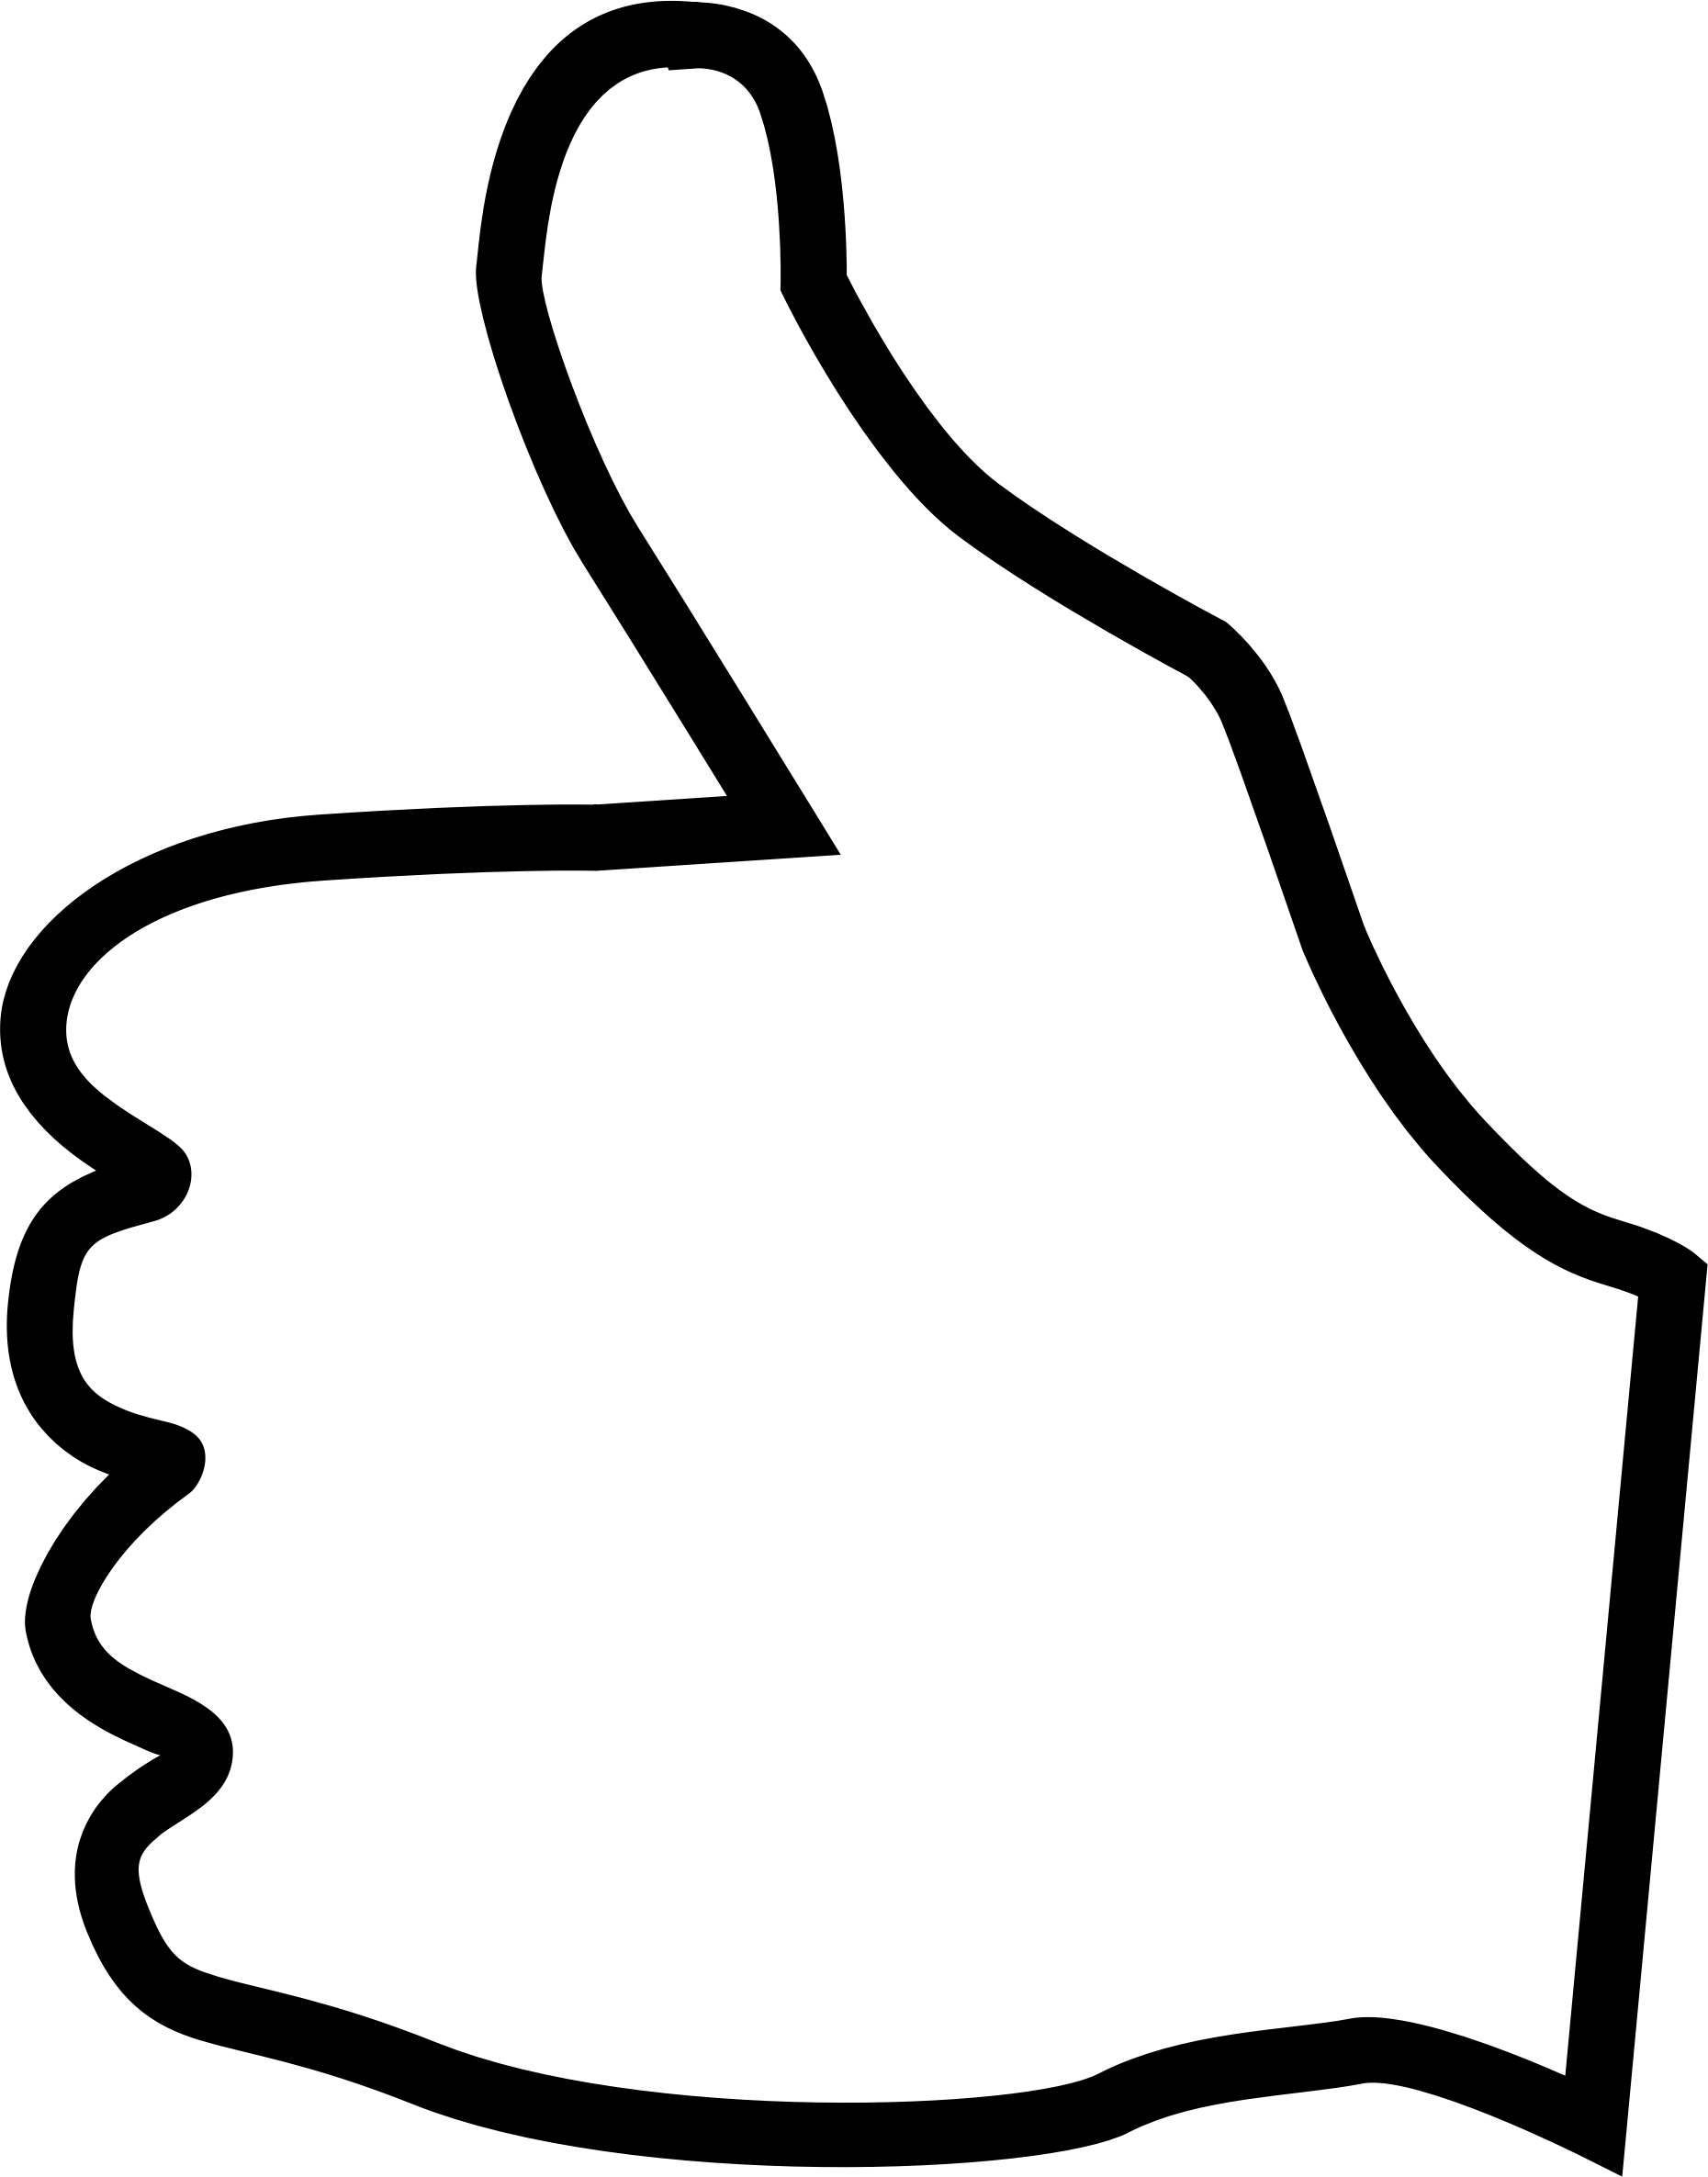 Thumbs up thumb up clip art at vector clip art - Clipartix